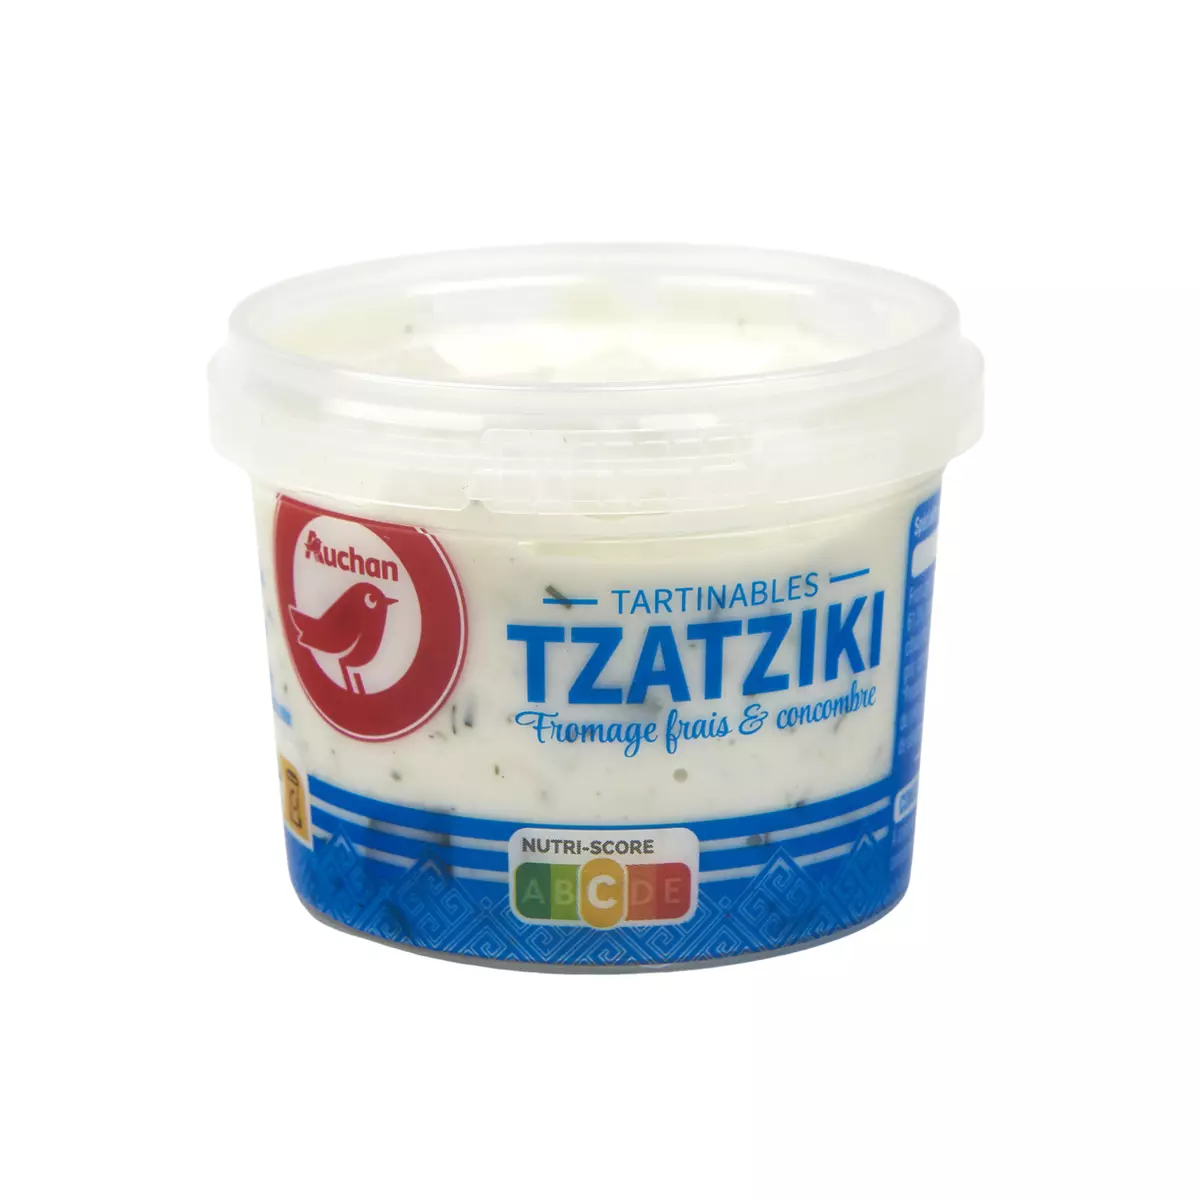 AUCHAN Tzatziki tartinable fromage frais et concombre 100g